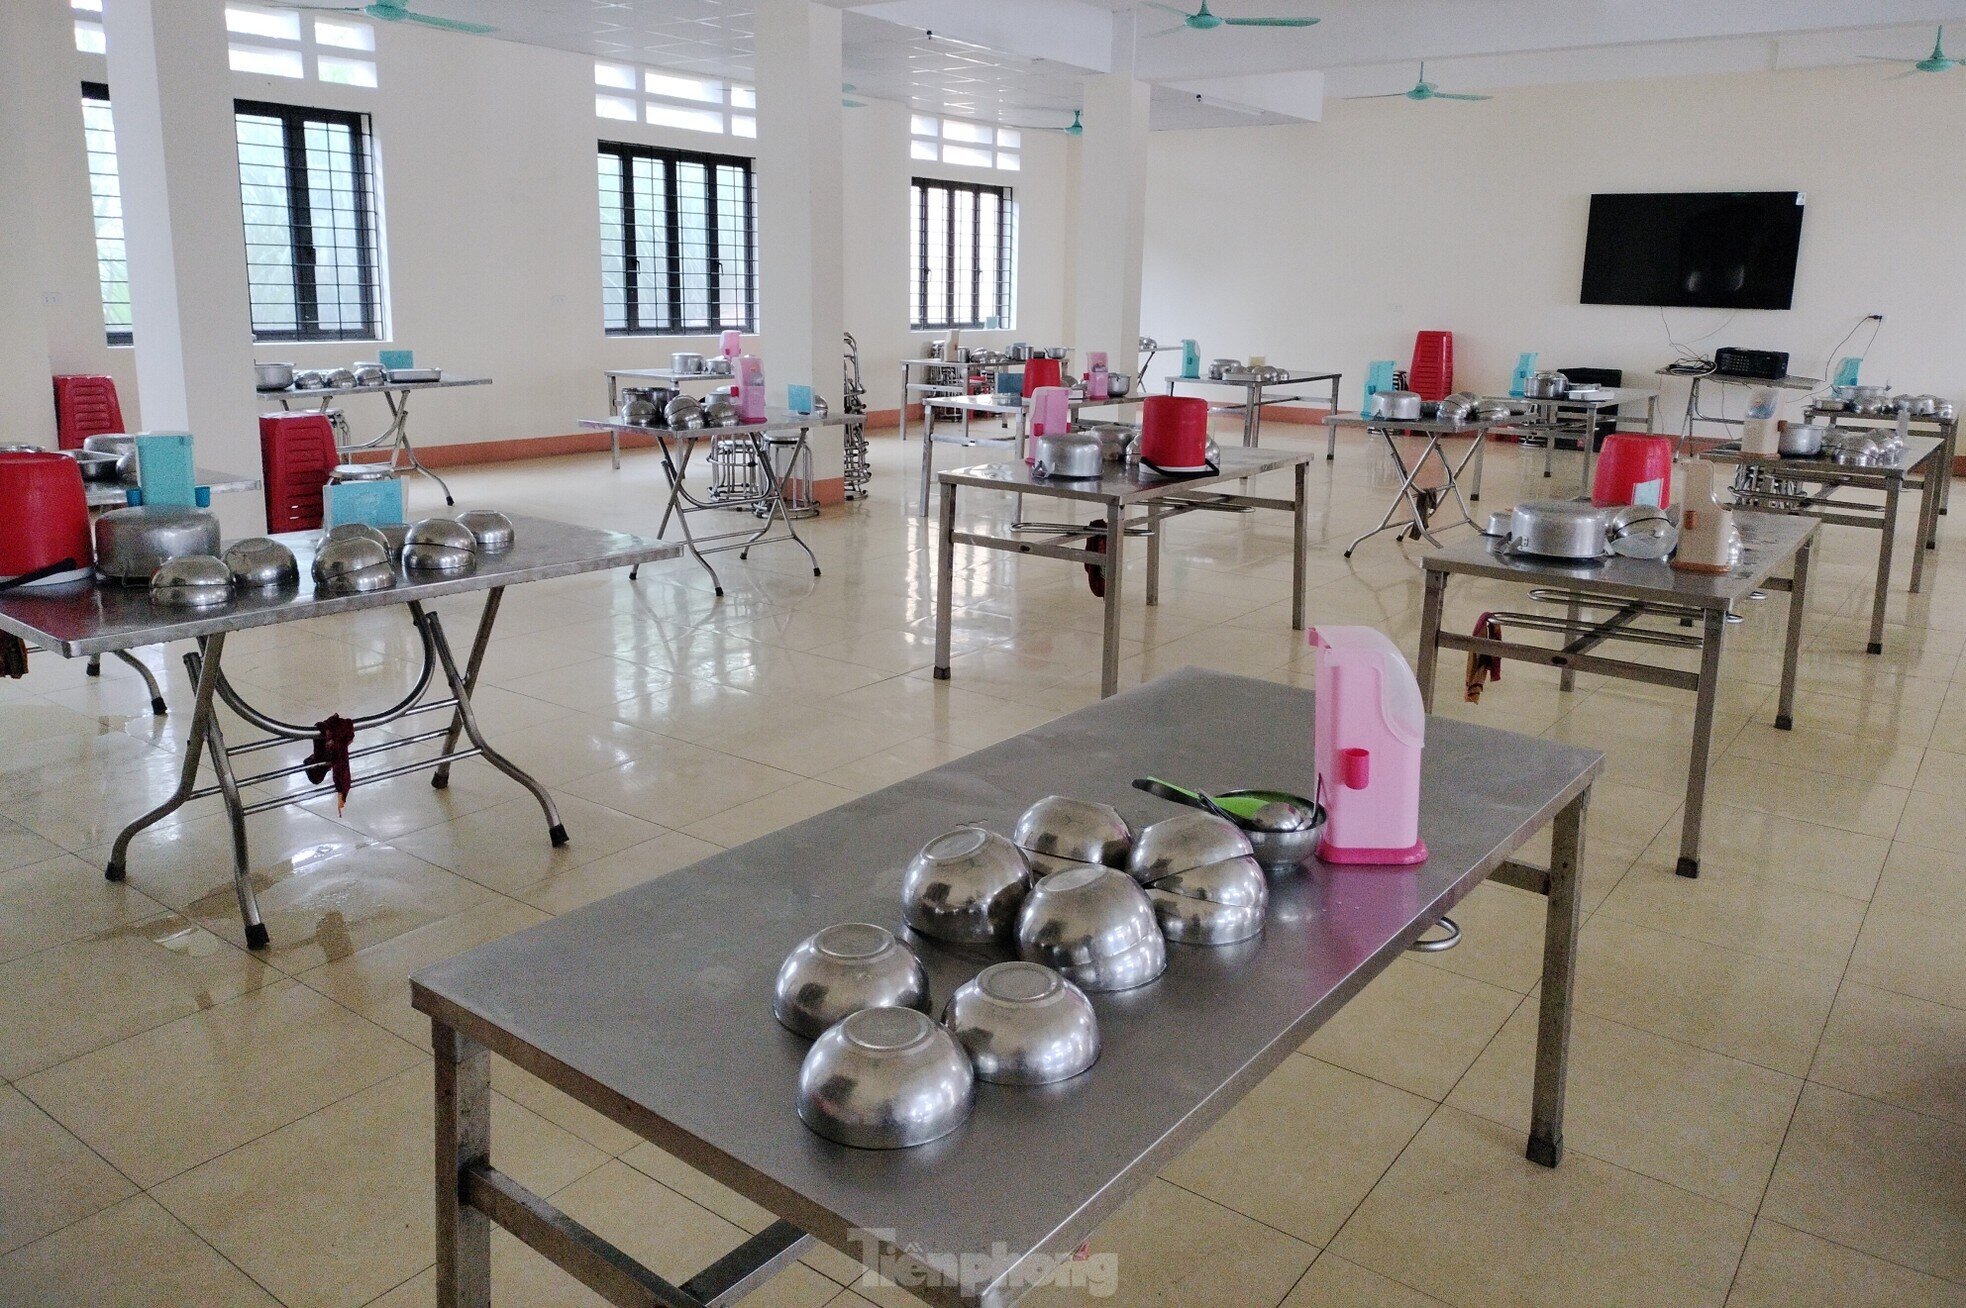 Chiều 19/12, có mặt tại khu vực bếp ăn của nhà trường, phóng viên ghi nhận khu bếp được dọn dẹp sạch sẽ, bàn ghế sắp xếp ngăn nắp.